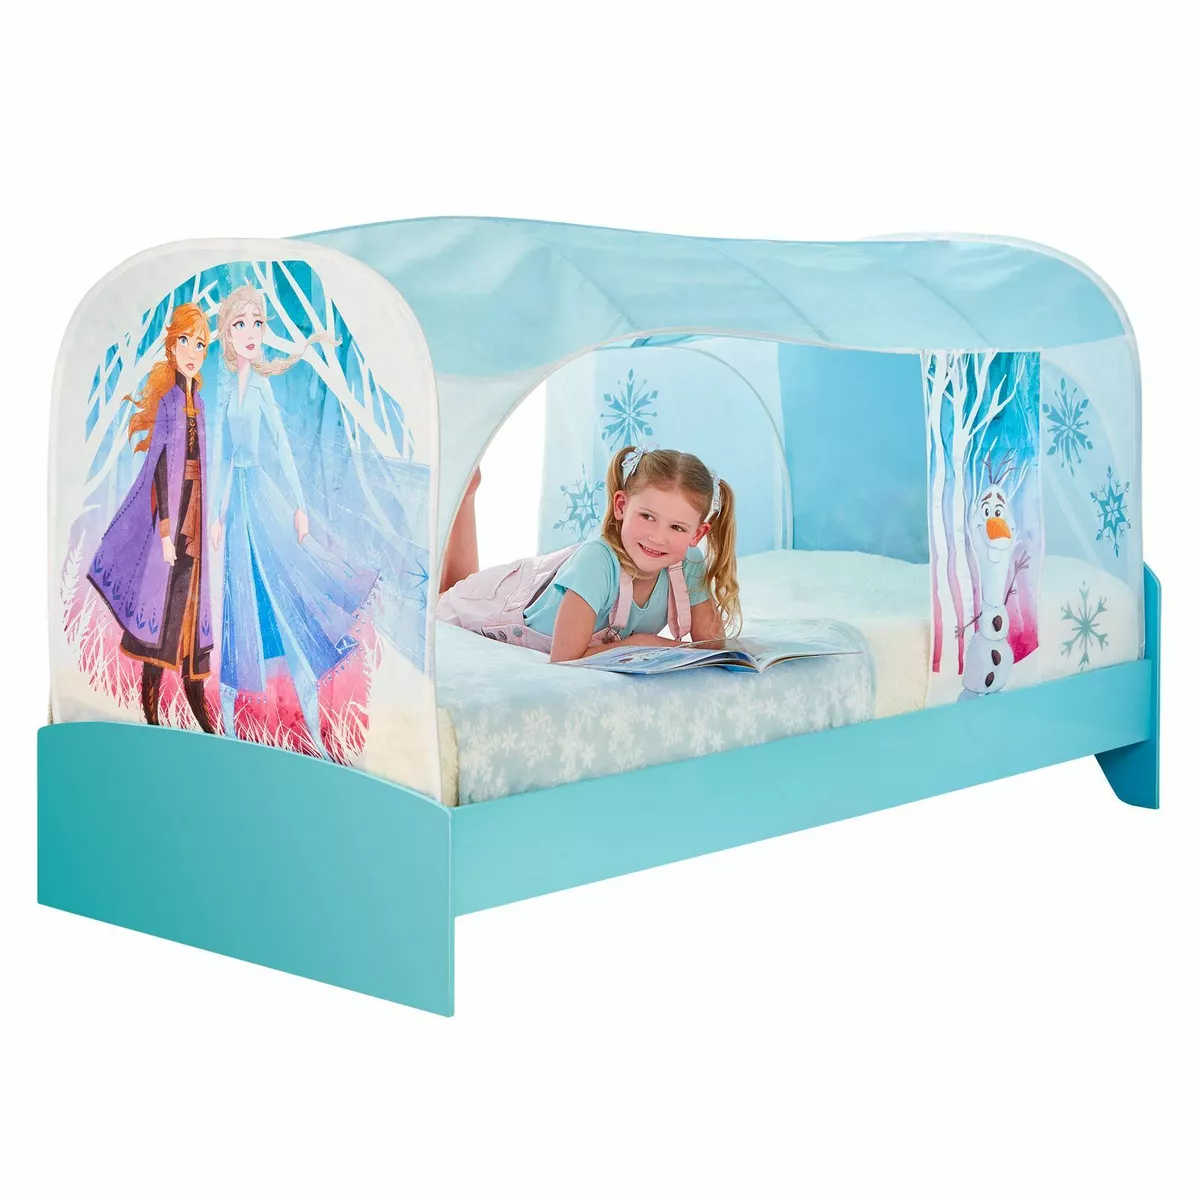 Attent Plak opnieuw scherm Disney Frozen 2 Over Bed Tent Den Girls Bedtime 5013138670958 | eBay